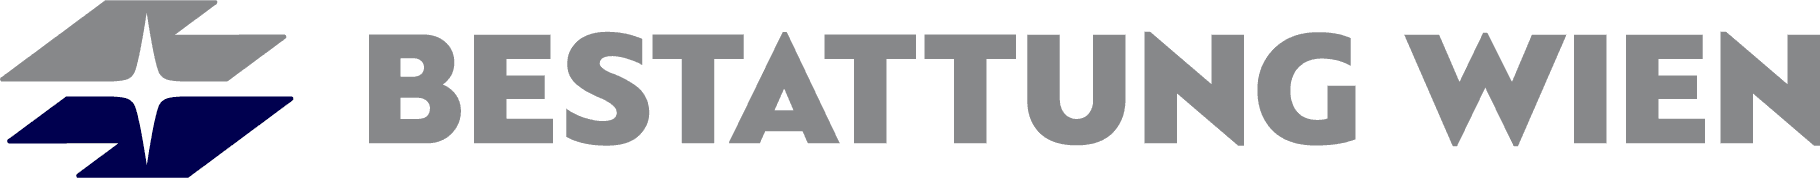 Logo BESTATTUNG WIEN - Kundenservice Margareten